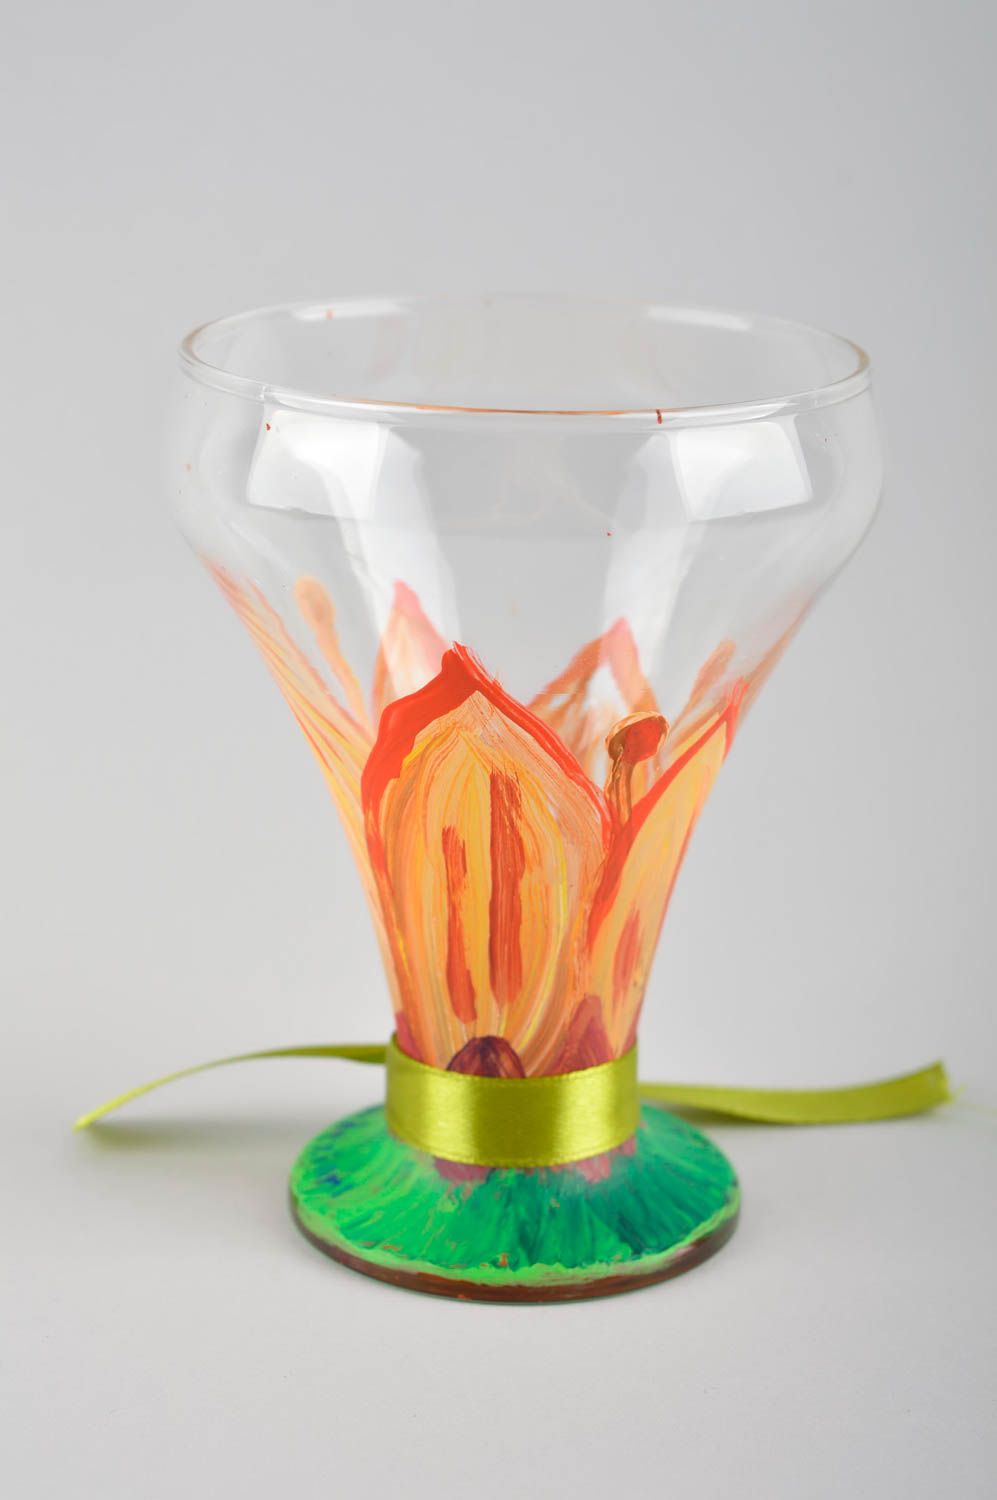 Стеклянный стакан посуда ручной работы расписная посуда необычной формы фото 3